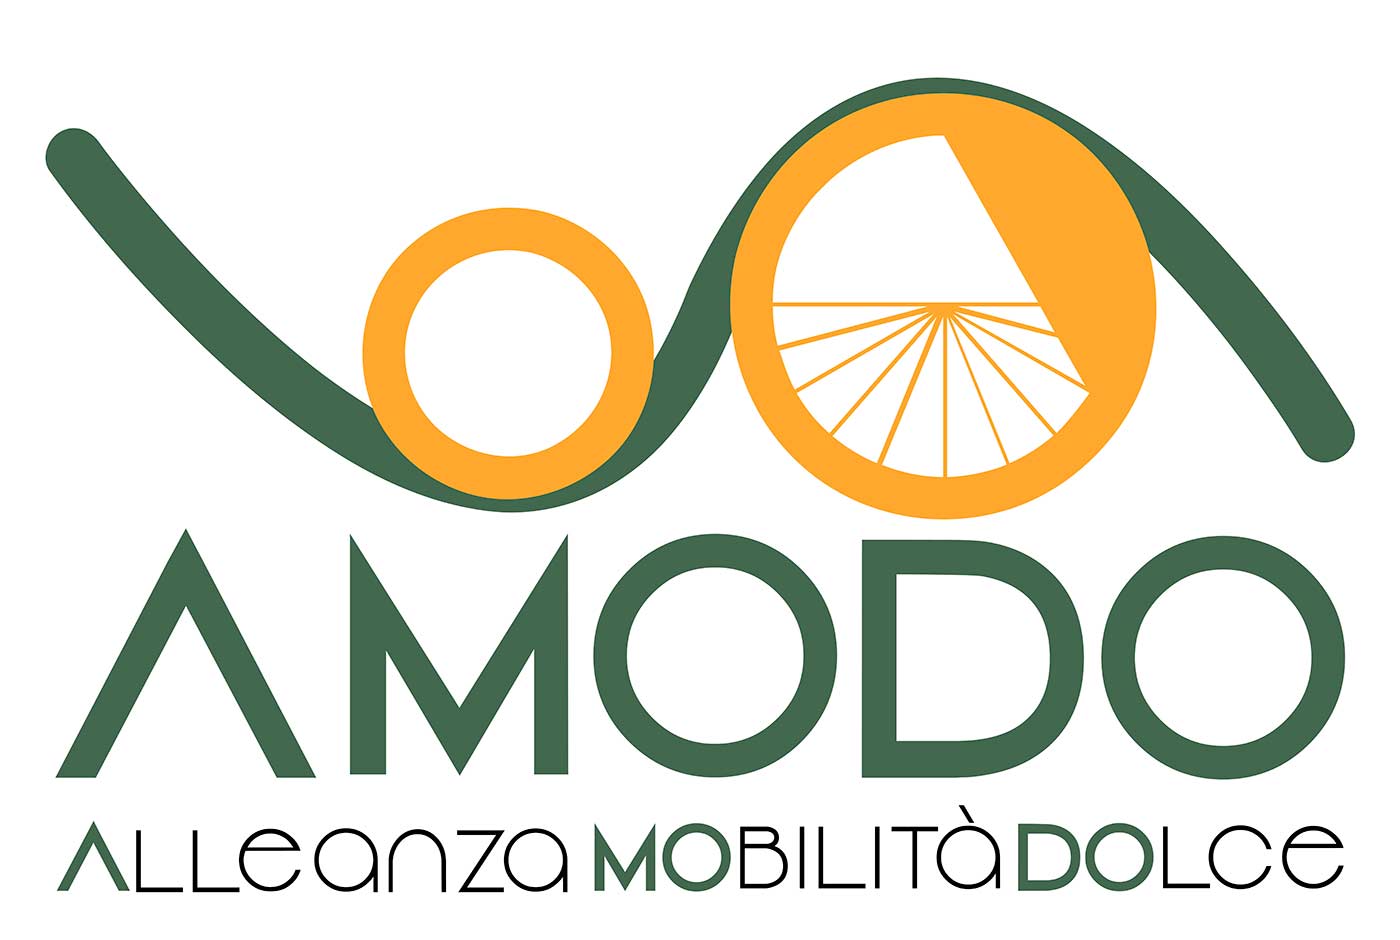 Logo AMODO - Alleanza mobilità dolce